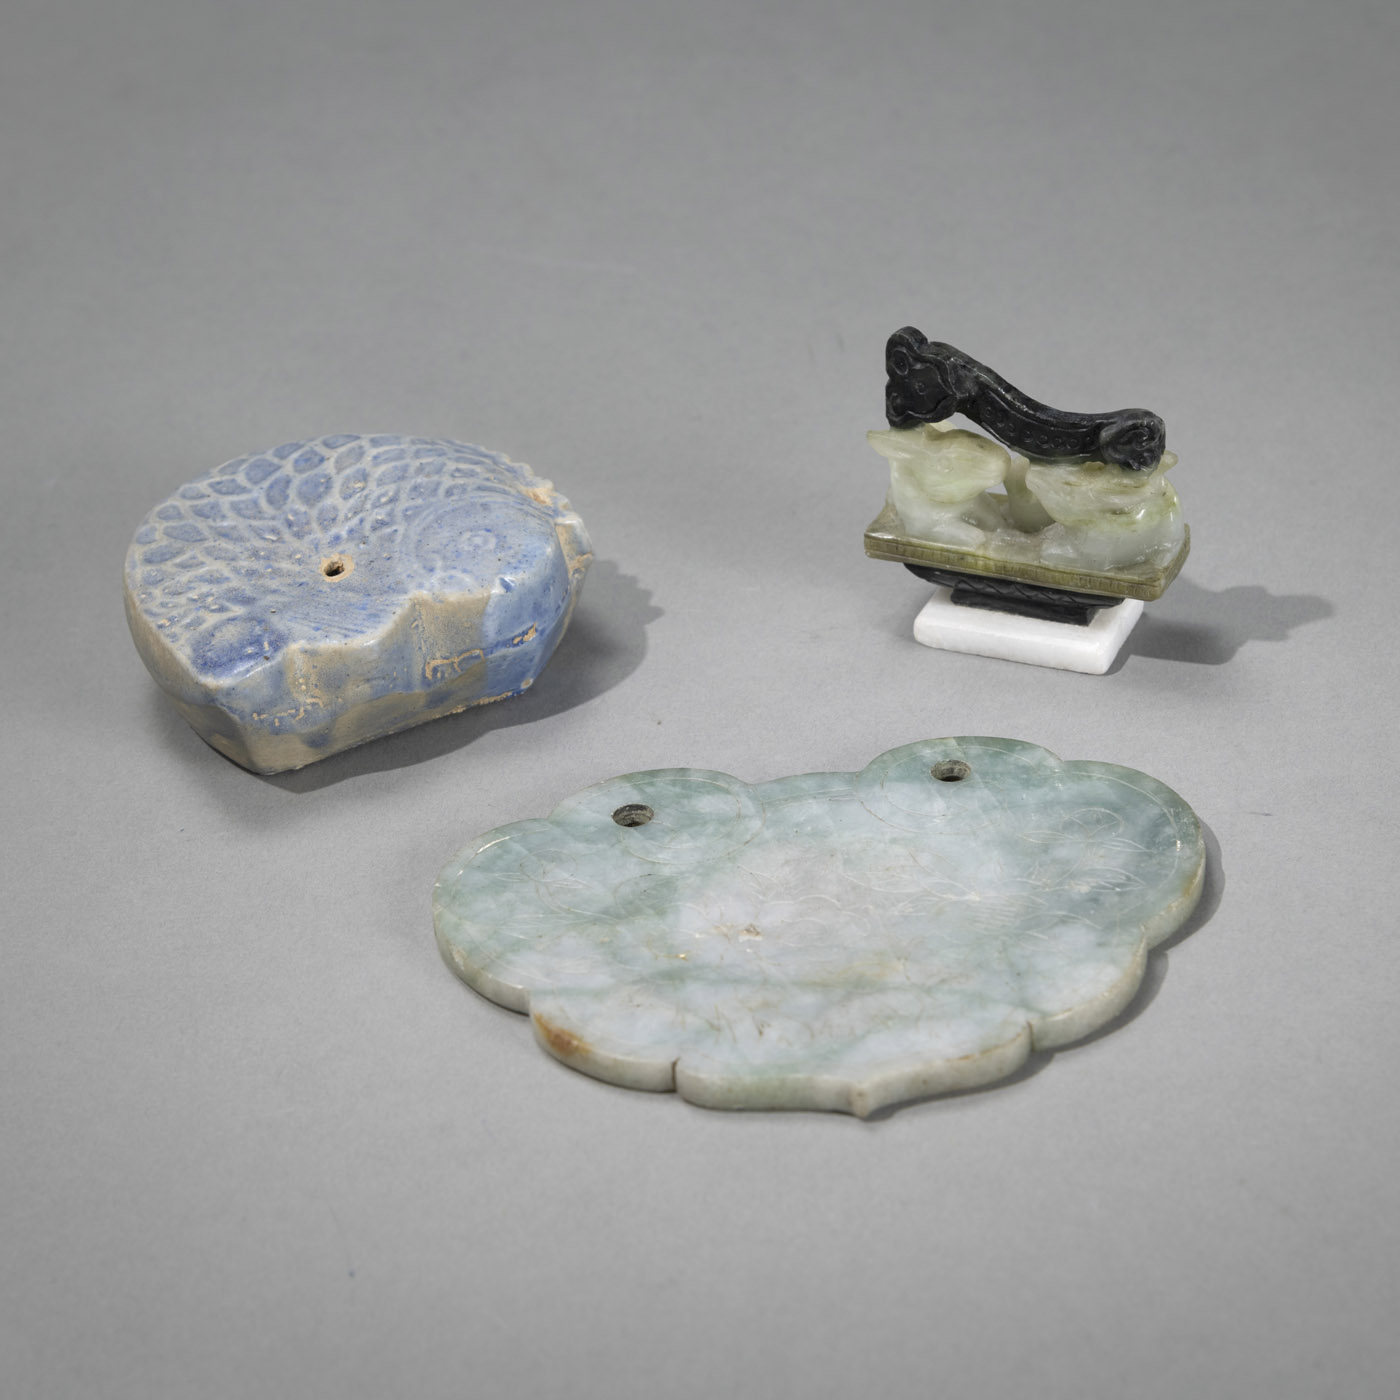 <b>Jade-Anhänger in ruyi-Form, Pinselablage aus Speckstein und Keramik-Wassertropfer in Form eines Karpfens</b>